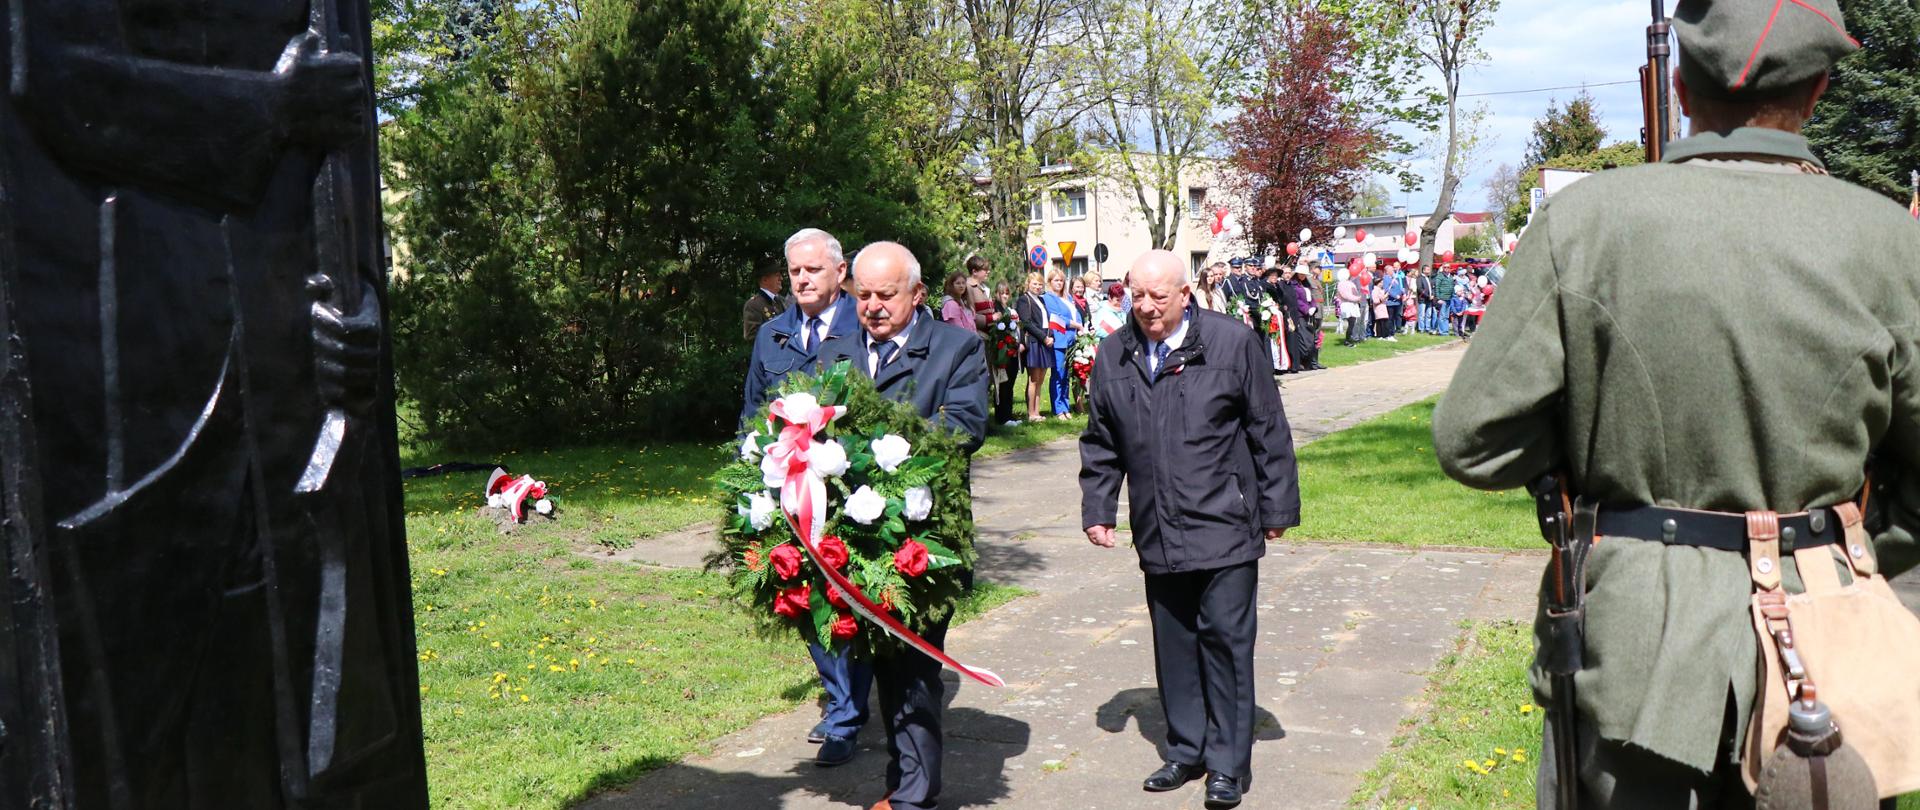 Przewodniczący Rady Miejskiej, Burmistrz Miasta i Gminy Budzyń oraz jego Zastępca składający wiązankę kwiatów pod Pomnikiem Pamięci Narodowej.